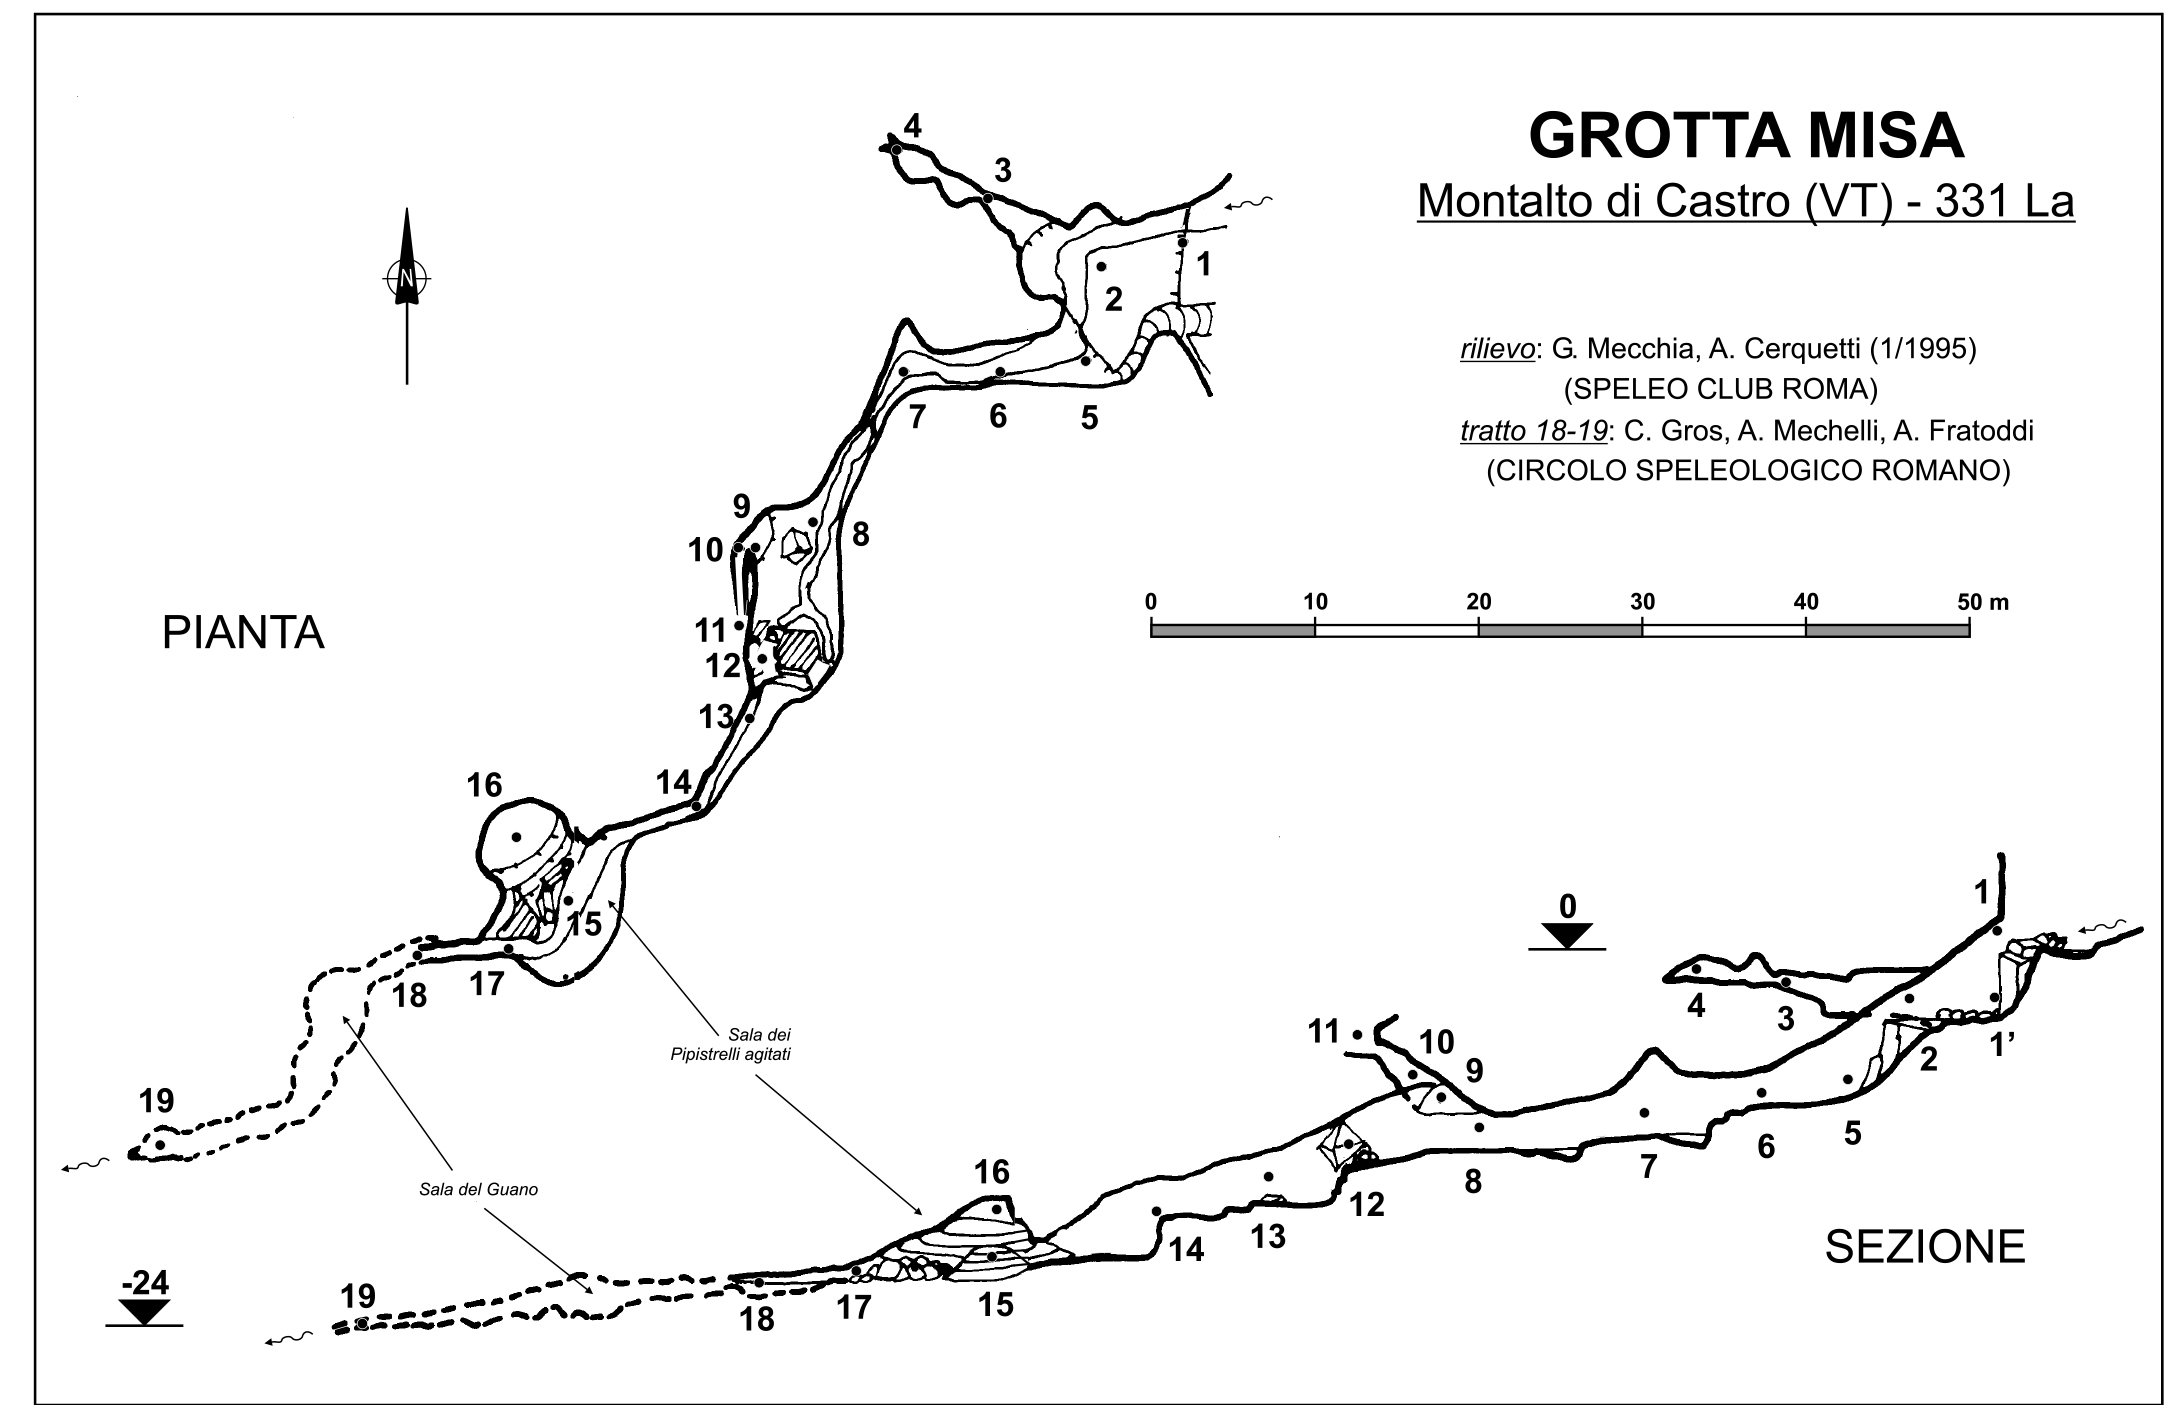 GROTTA MISA (cavità naturale, area ad uso funerario) - Ischia di Castro (VT)  (Età del Bronzo medio)